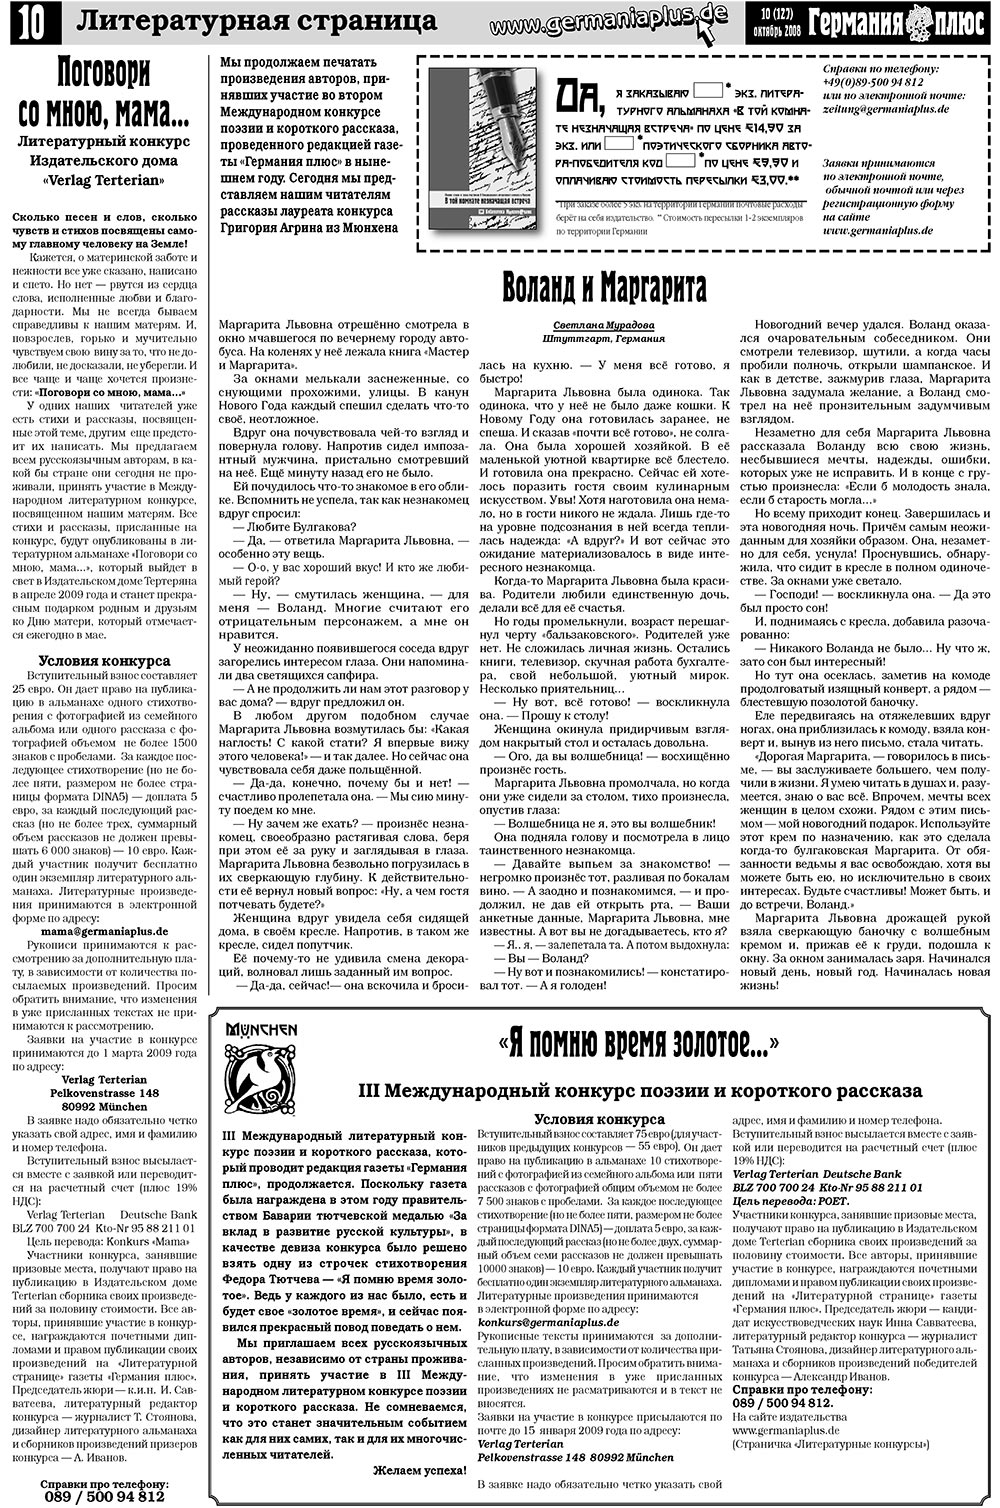 Германия плюс (газета). 2008 год, номер 10, стр. 14